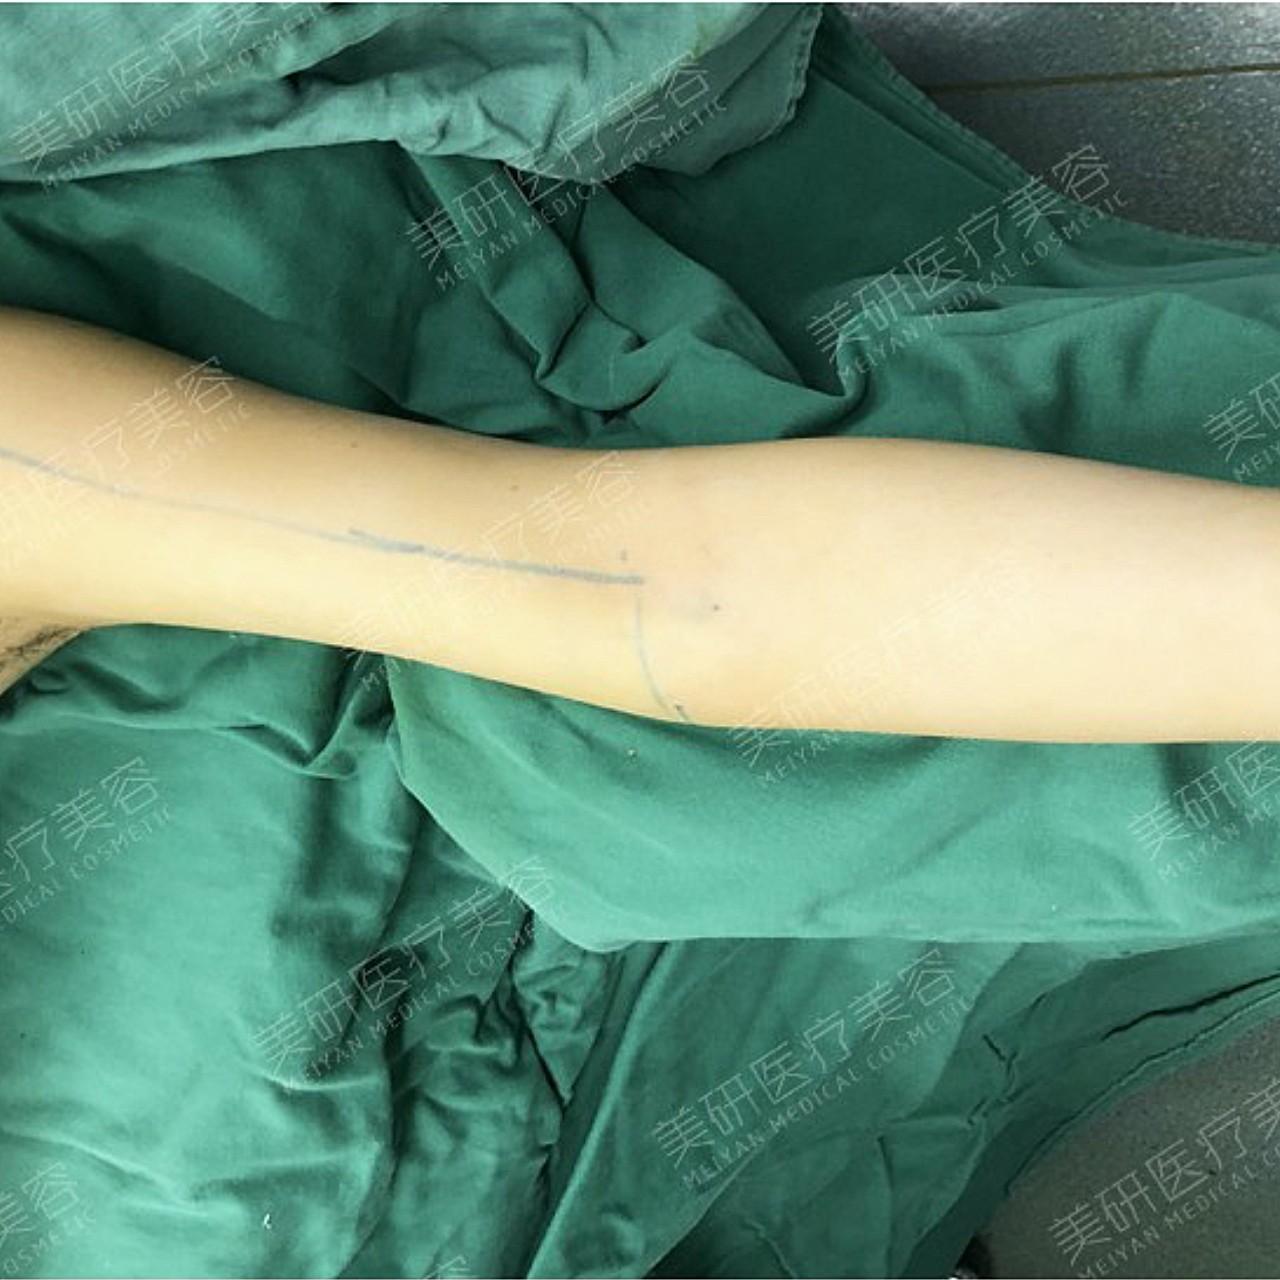 术前诊断术前手臂皮下脂肪堆积过于肥厚,且处于相对松_圈子-新氧美容